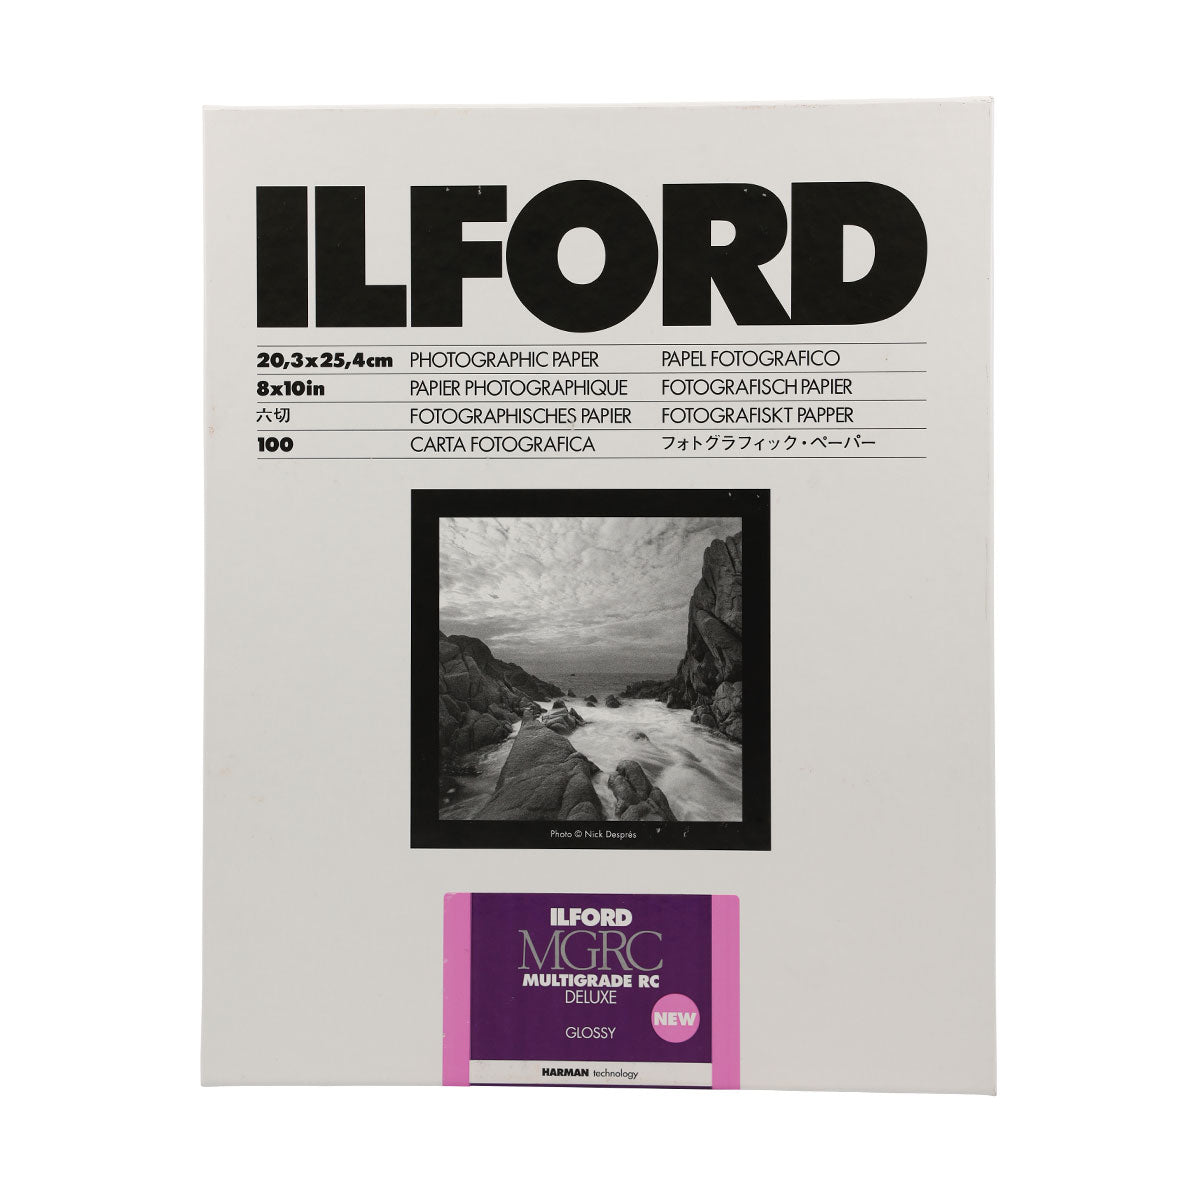 Ilford Multigrade RC Deluxe Glossy 8x10 100